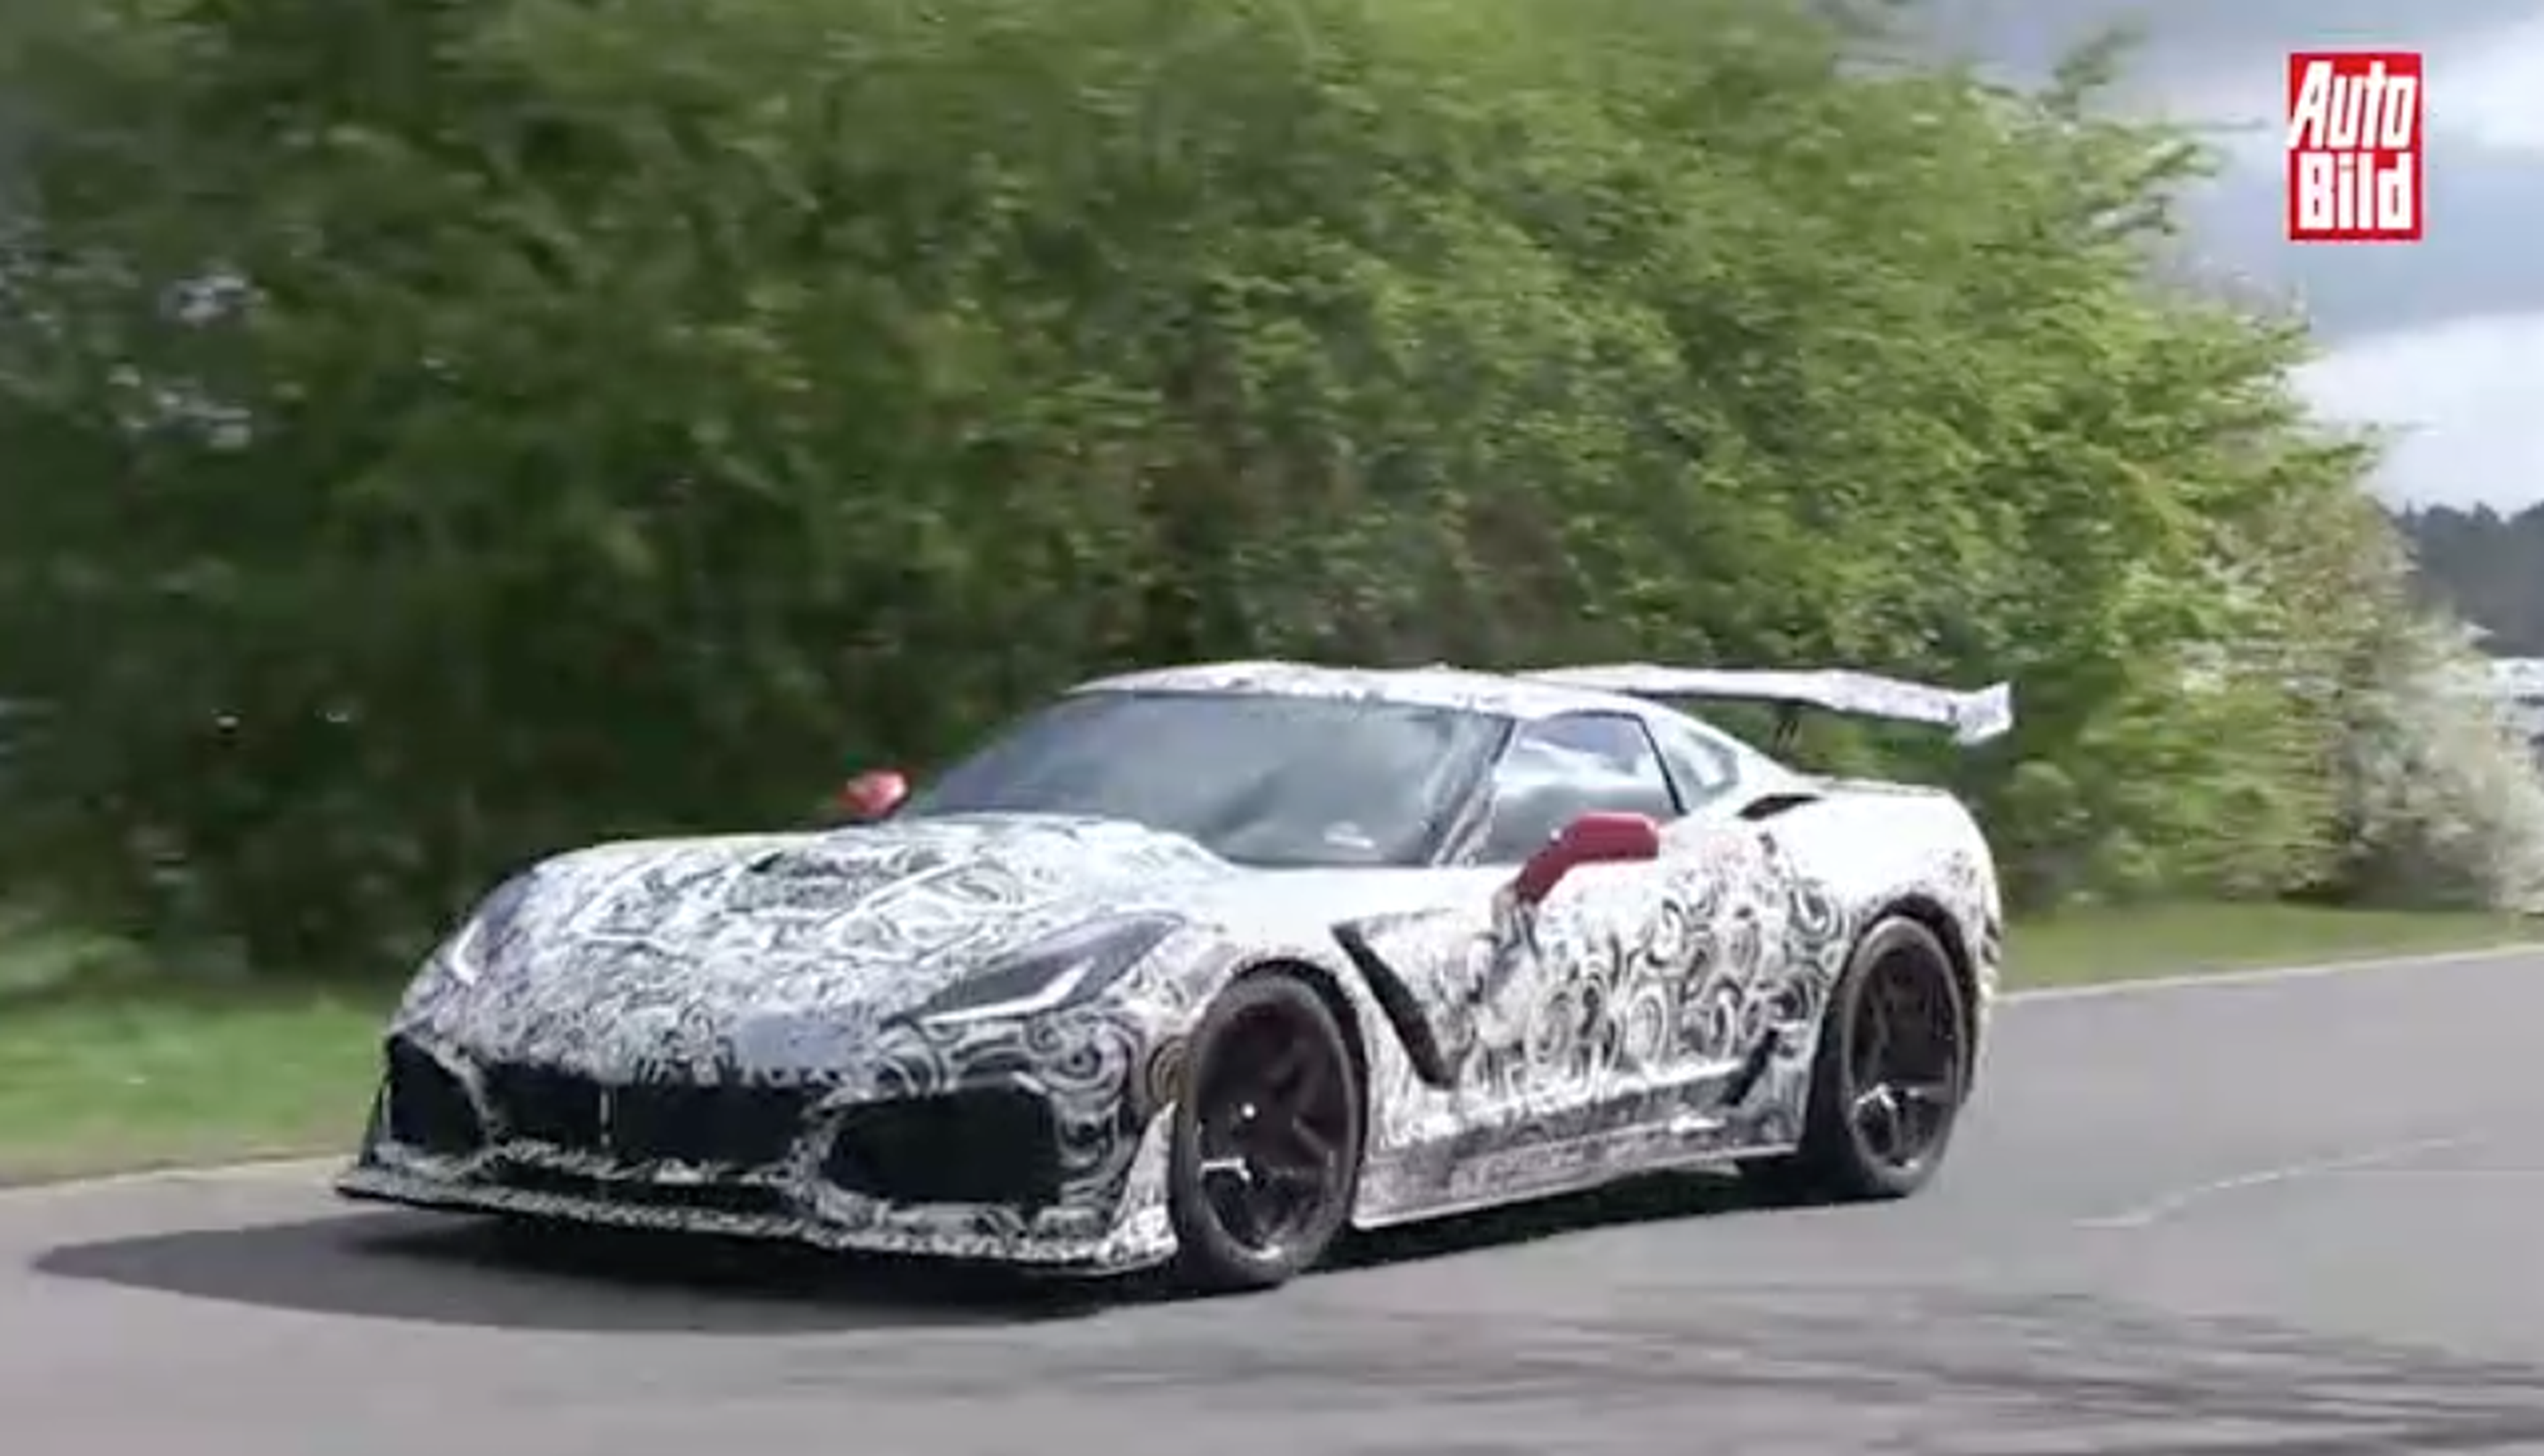 VÍDEO: ¿El Corvette más potente de siempre? ¡Mira cómo lo prueban!